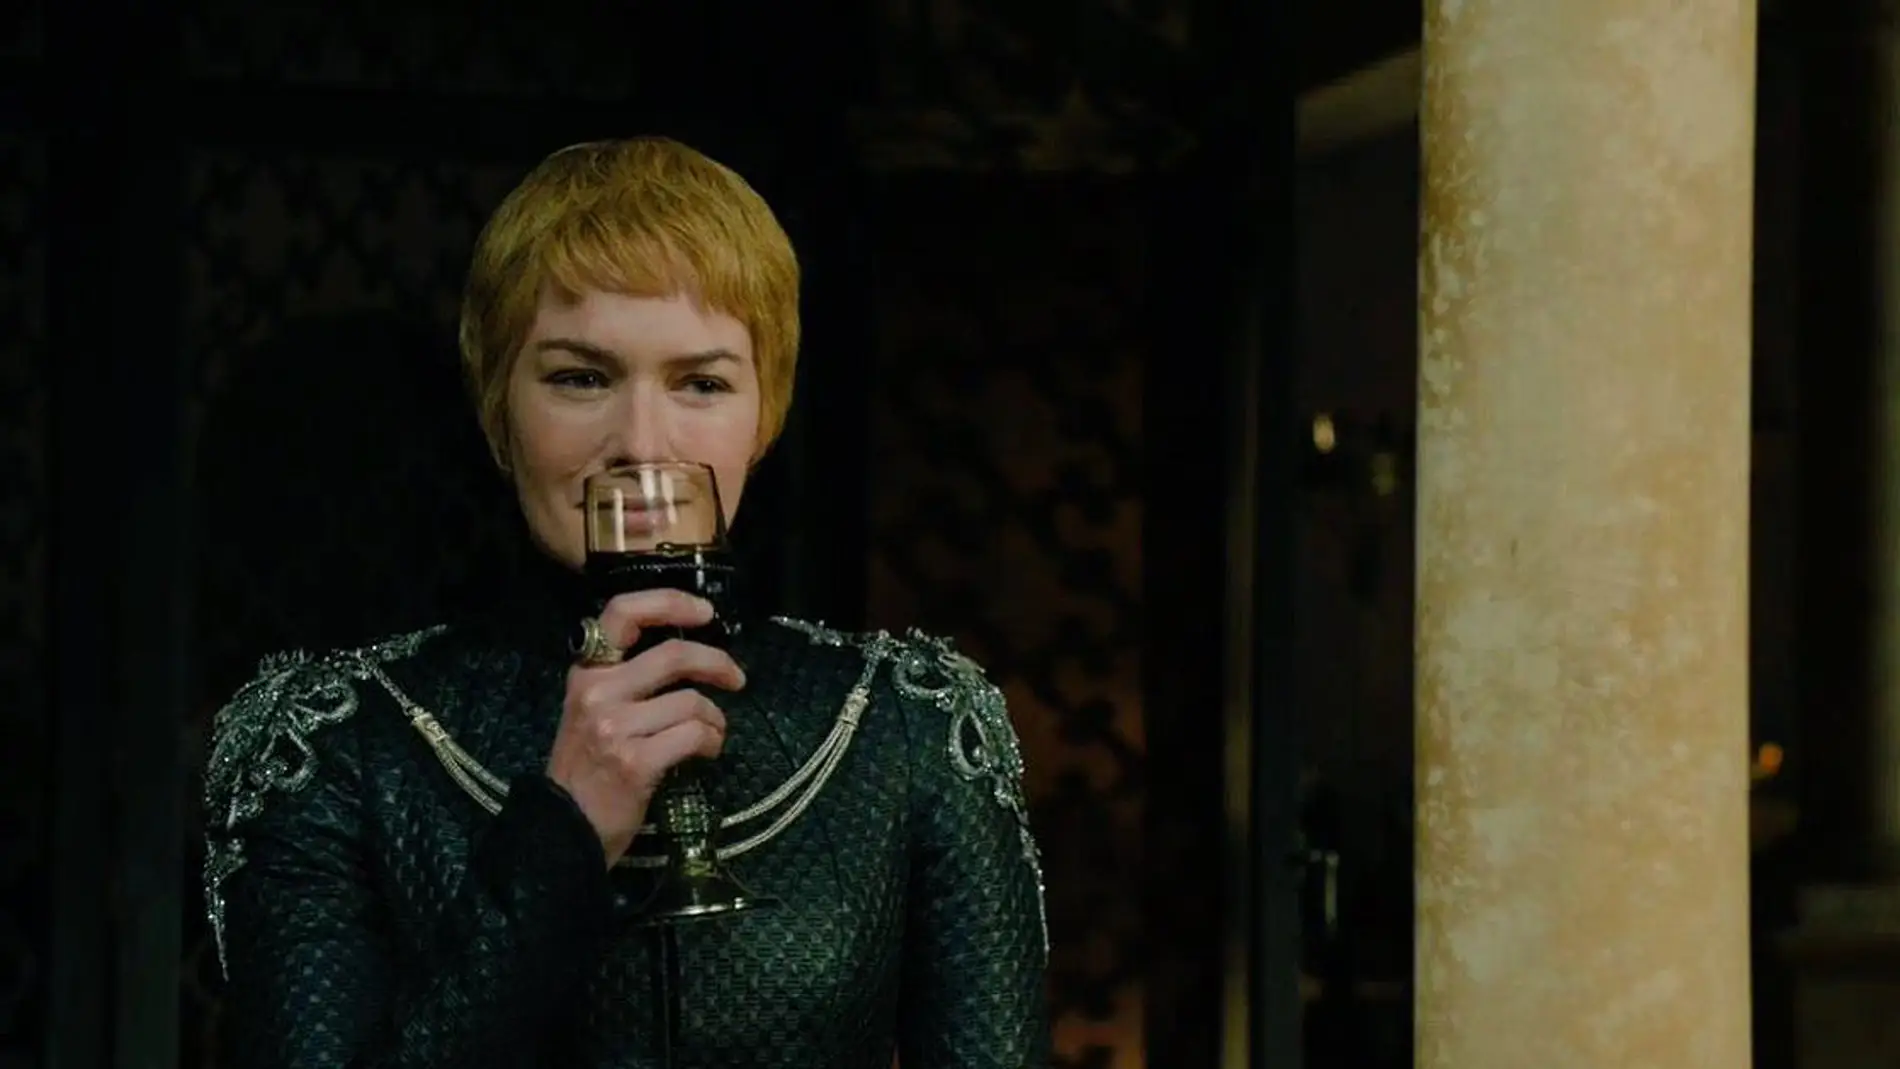 Cersei Lannister (Lena Headey) en 'Juego de Tronos'